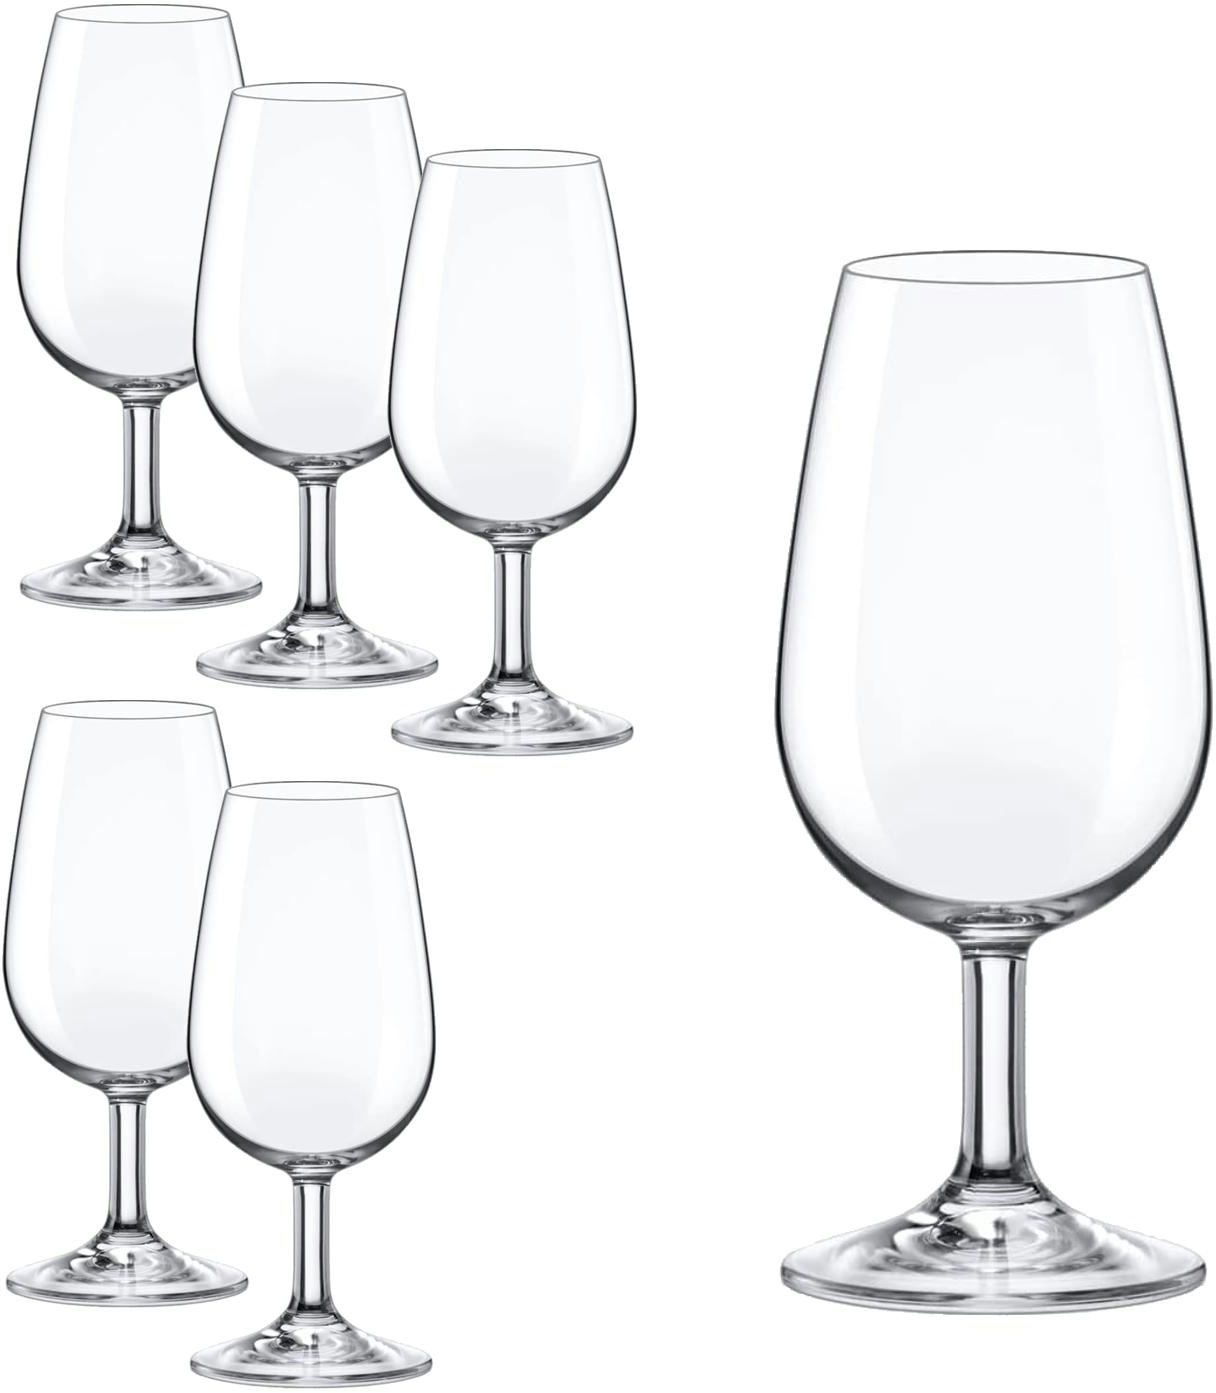 Rona Tasting Glas I.N.A.O. 6er Set, Inhalt 210 ml ,Weinglas zur Verkostung mit klassischer Form, ohne Bodenmarke, spülmaschinenfest,